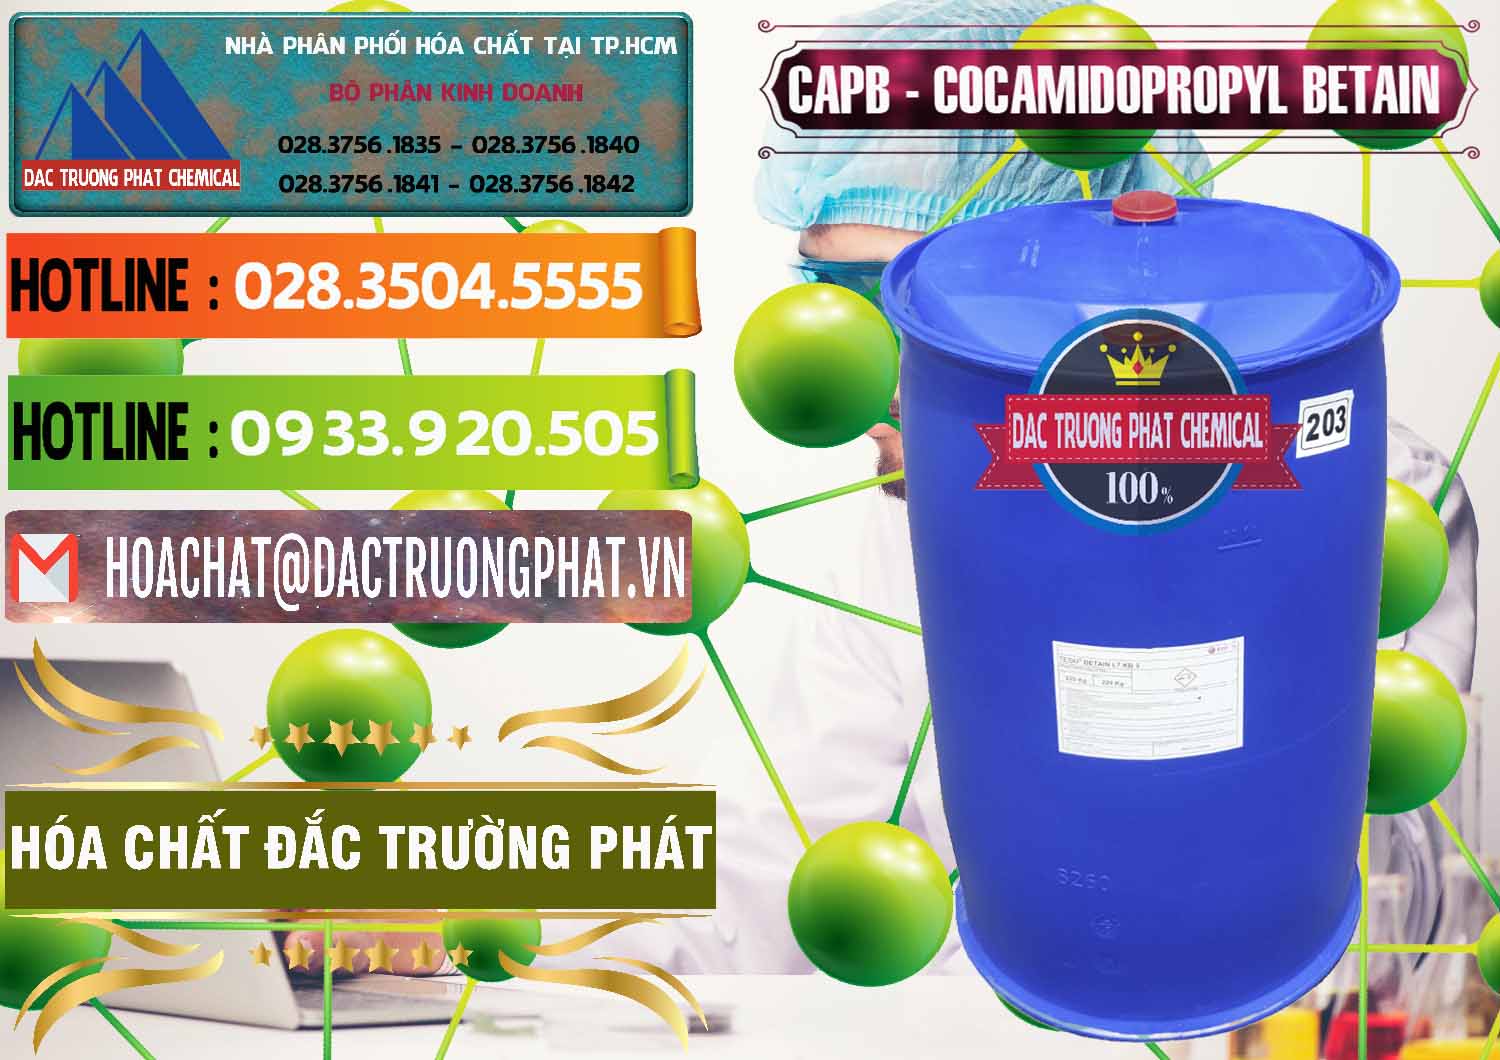 Công ty chuyên phân phối _ bán Cocamidopropyl Betaine - CAPB Tego Indonesia - 0327 - Cty phân phối và cung ứng hóa chất tại TP.HCM - cungcaphoachat.com.vn